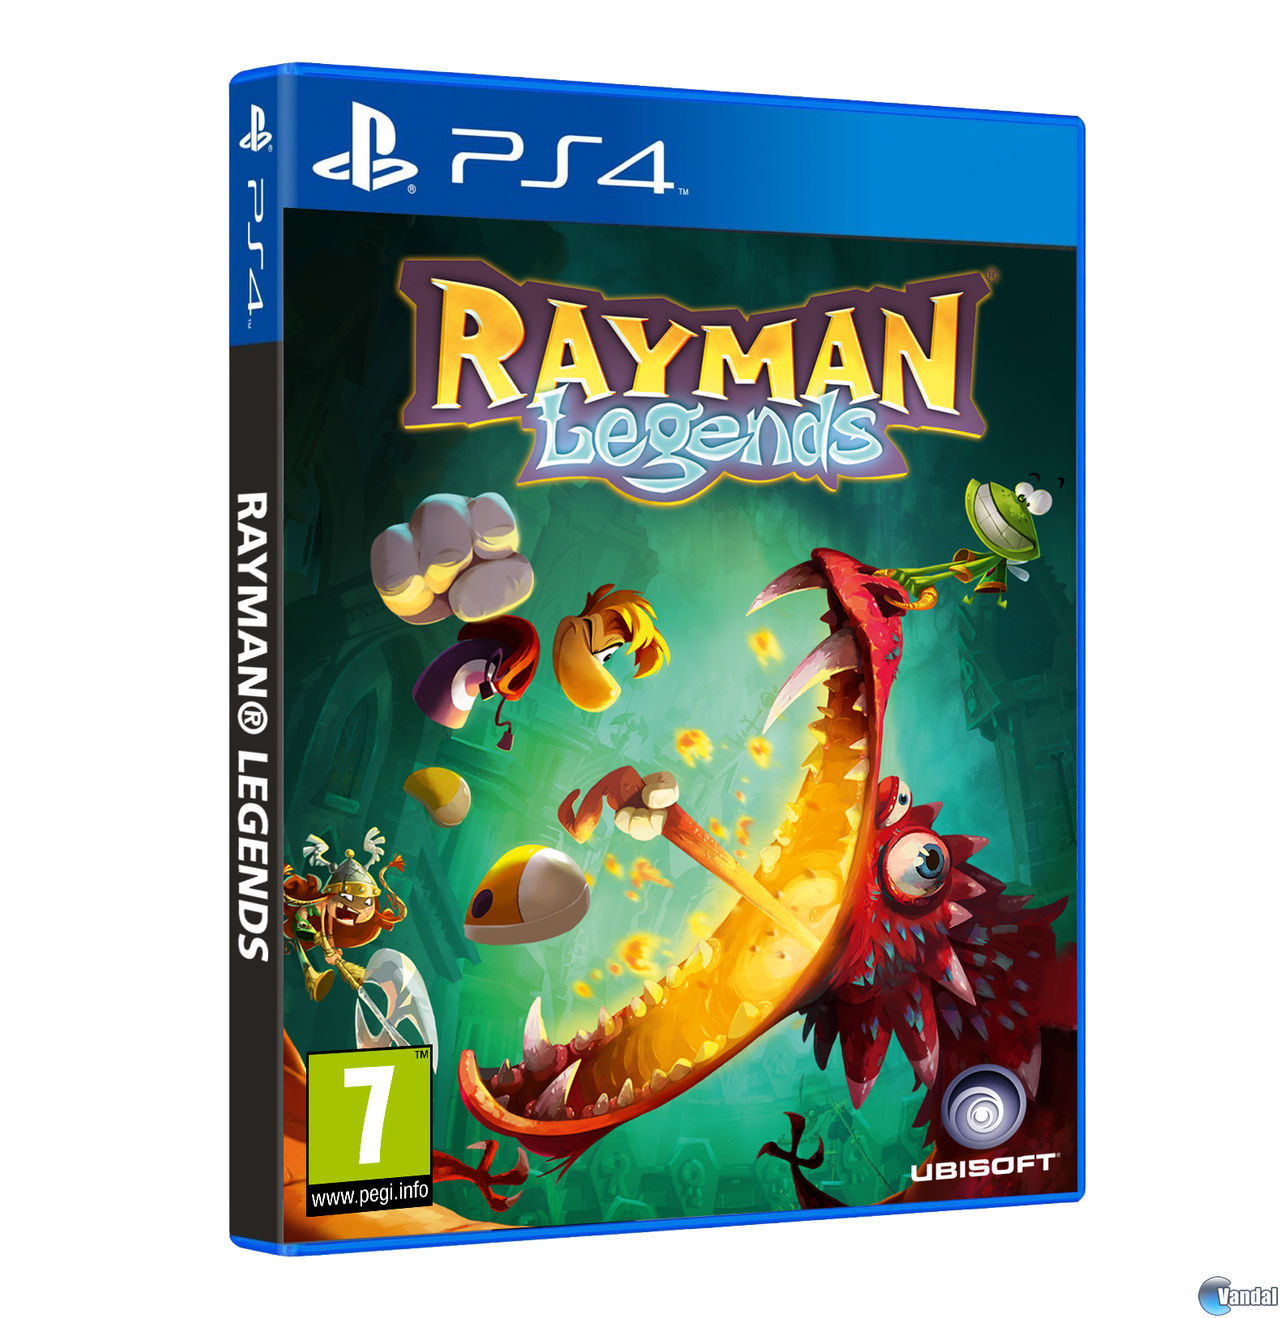 Rayman Legends: Requisitos mínimos y recomendados en PC - Vandal